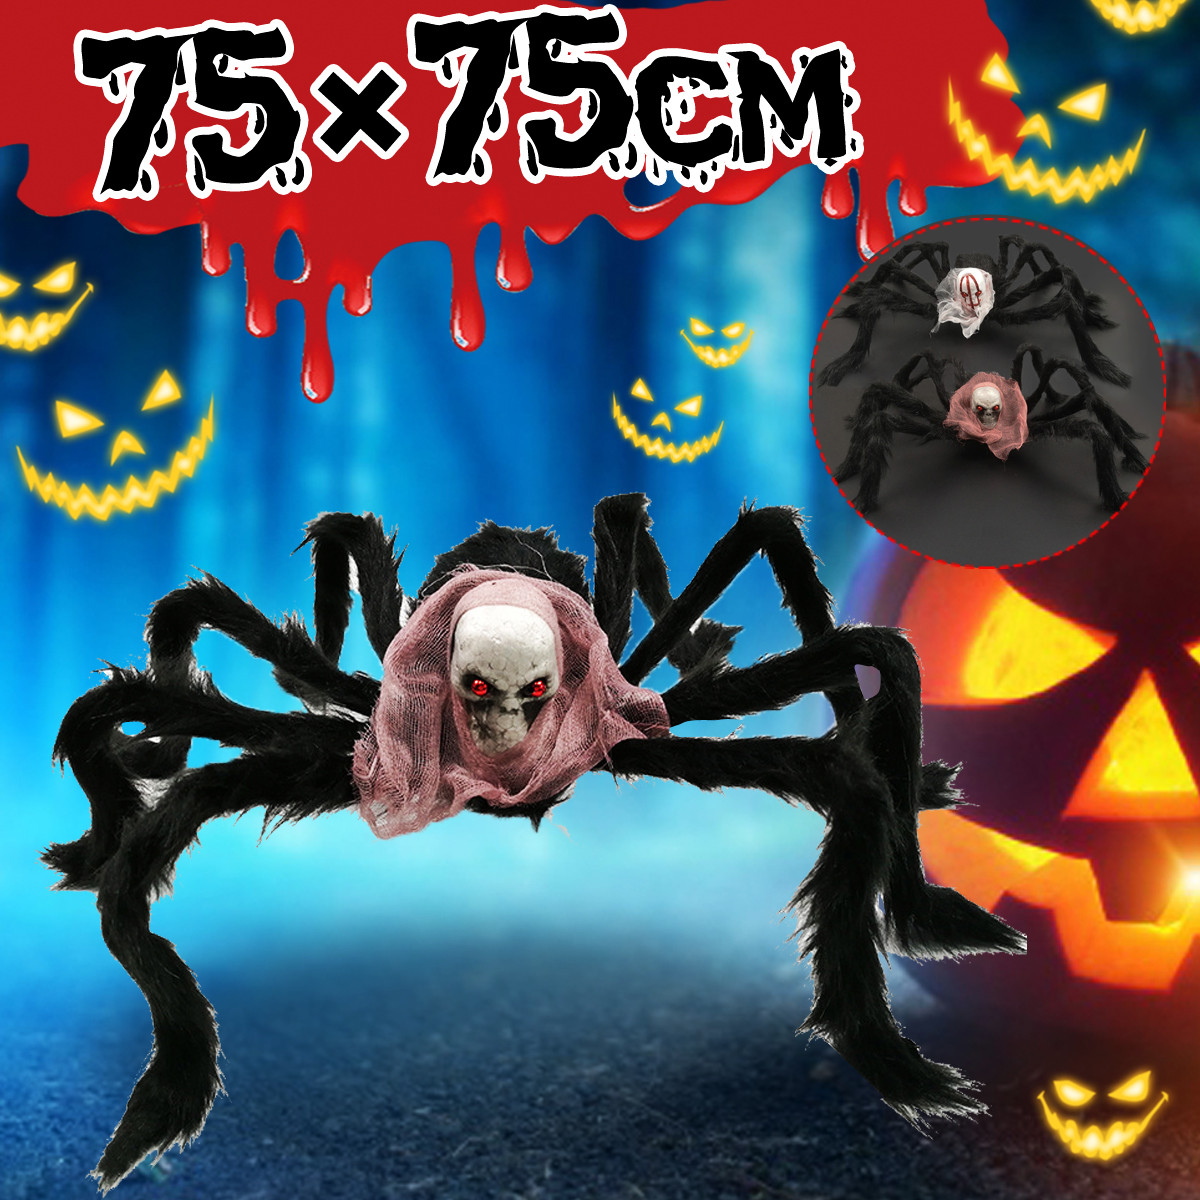 7575cm-Simulation-Skull-Ghost-Head-Plush-Spider-Spider-Leg-Straighten-Horror-Toy-1818663-1